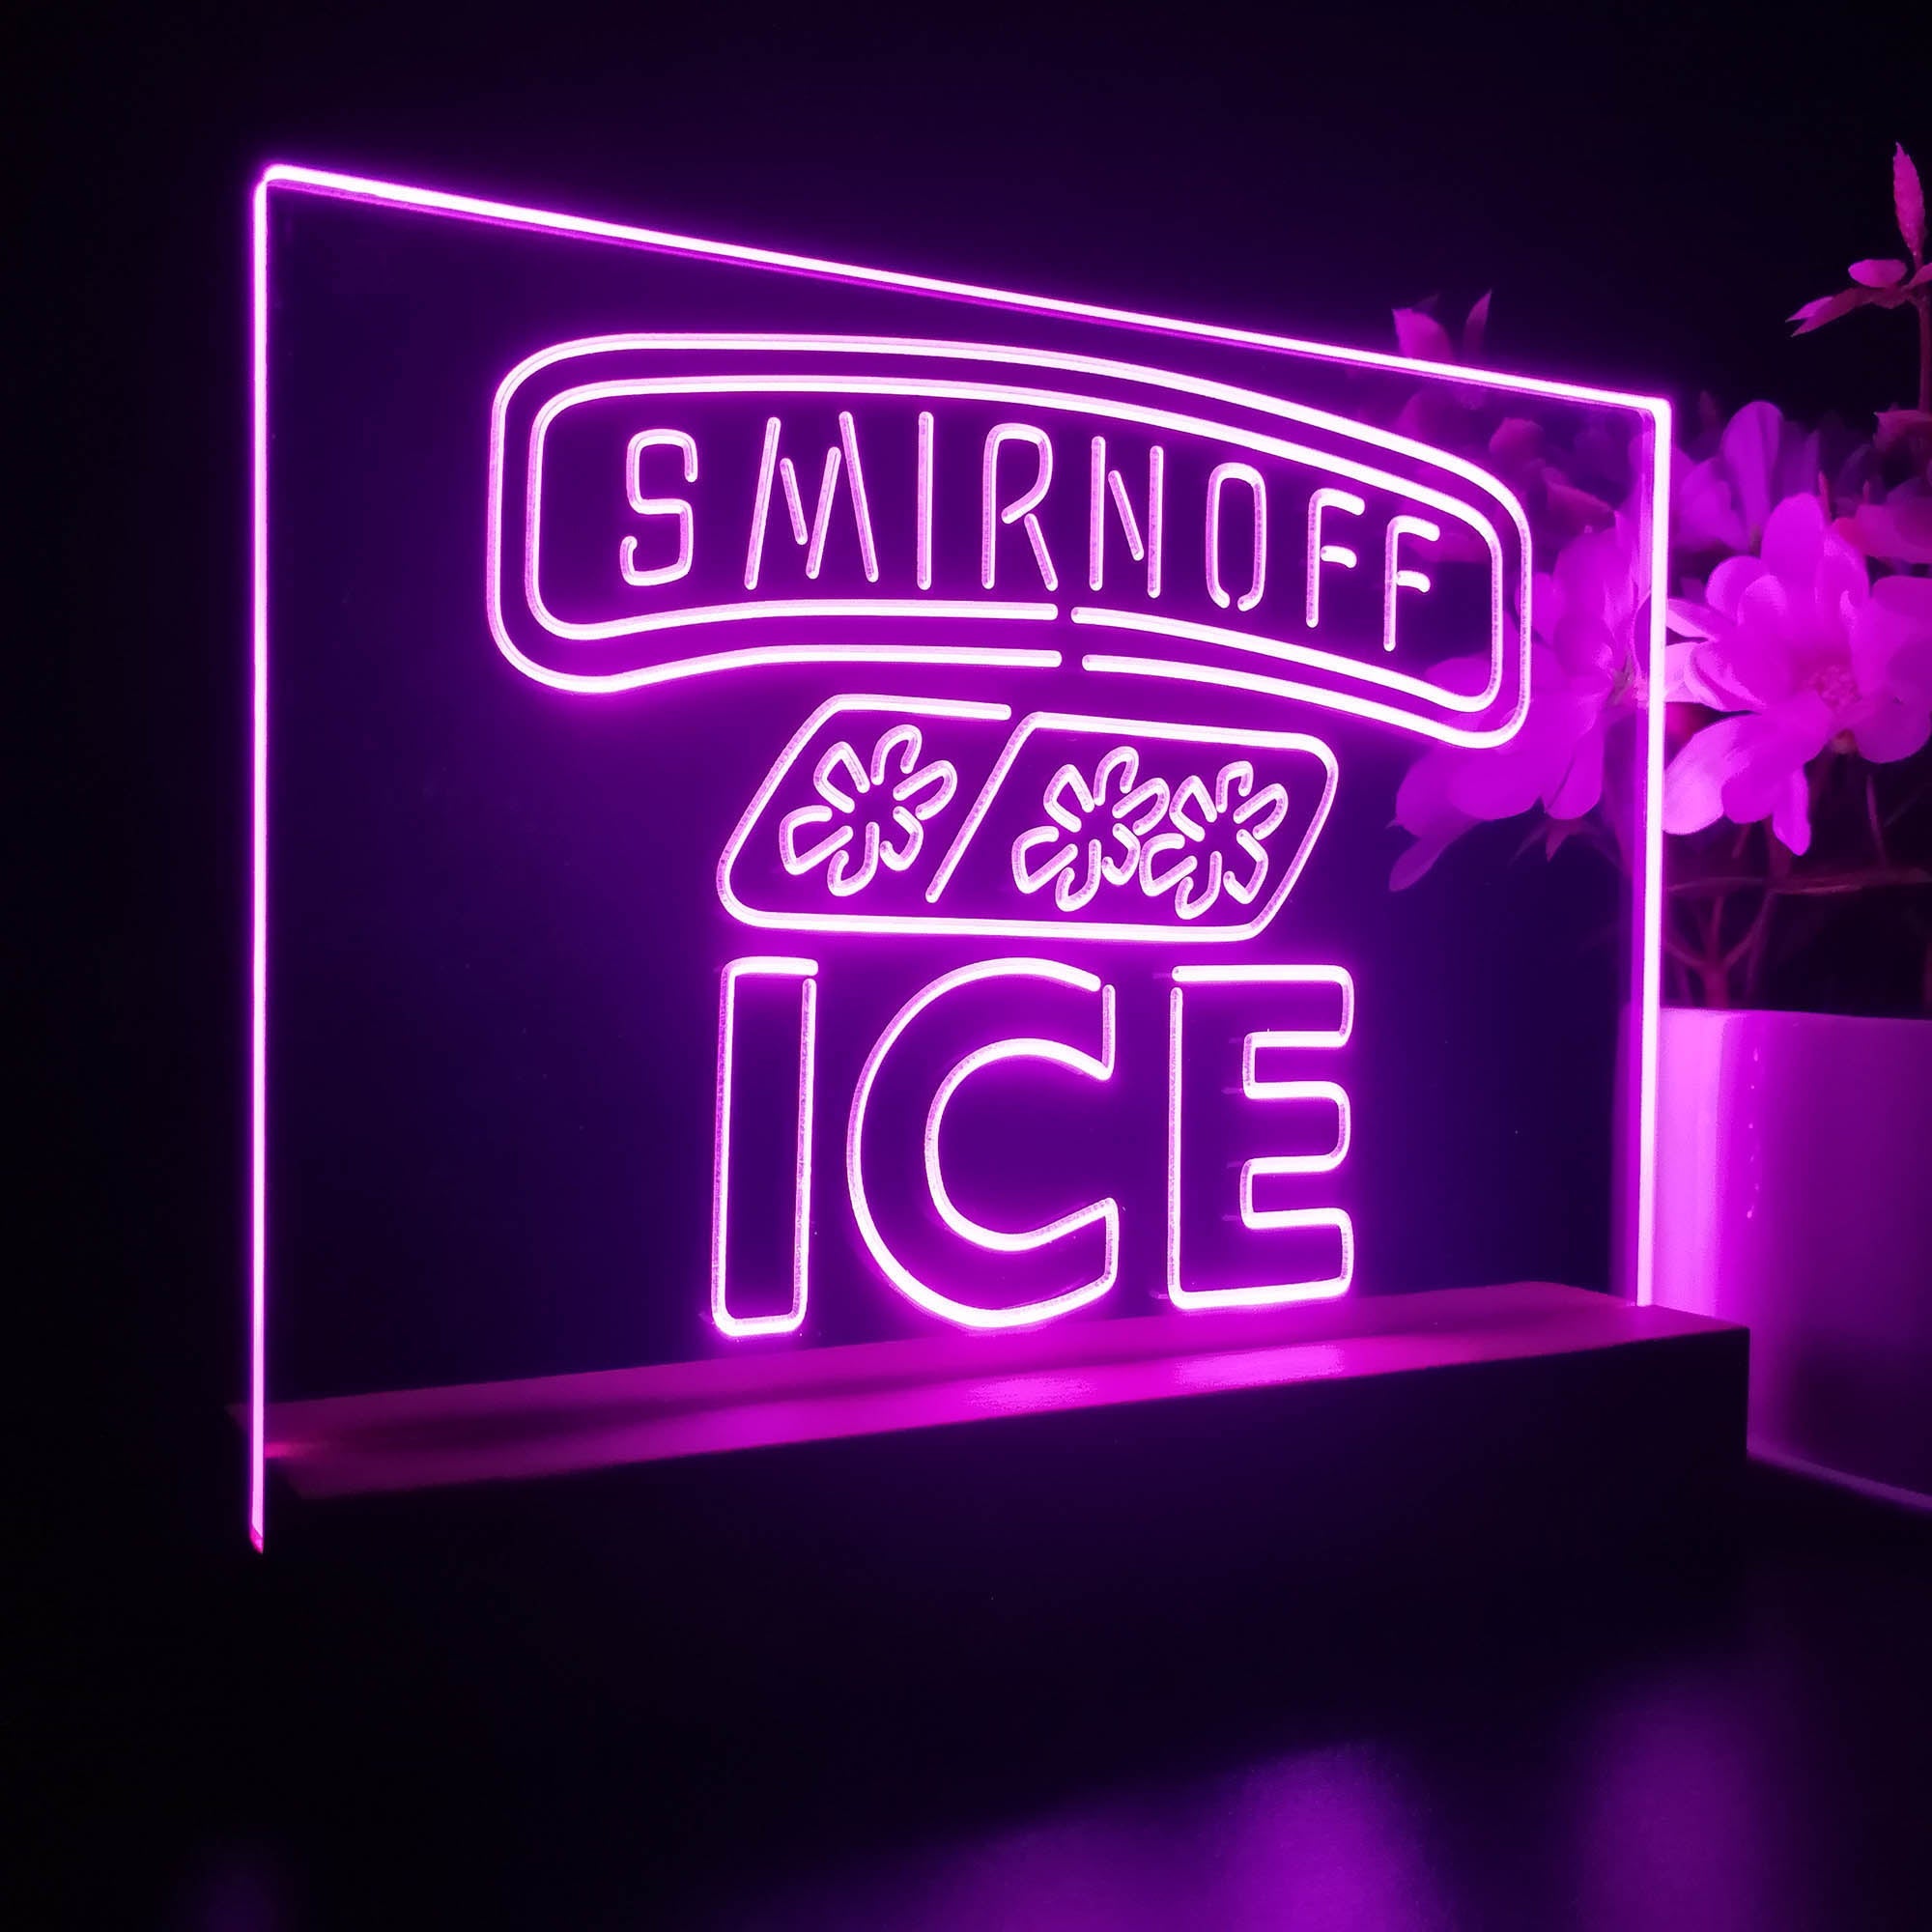 Smirnoff Ice Beverages Neon Sign Pub Bar Decor Lamp